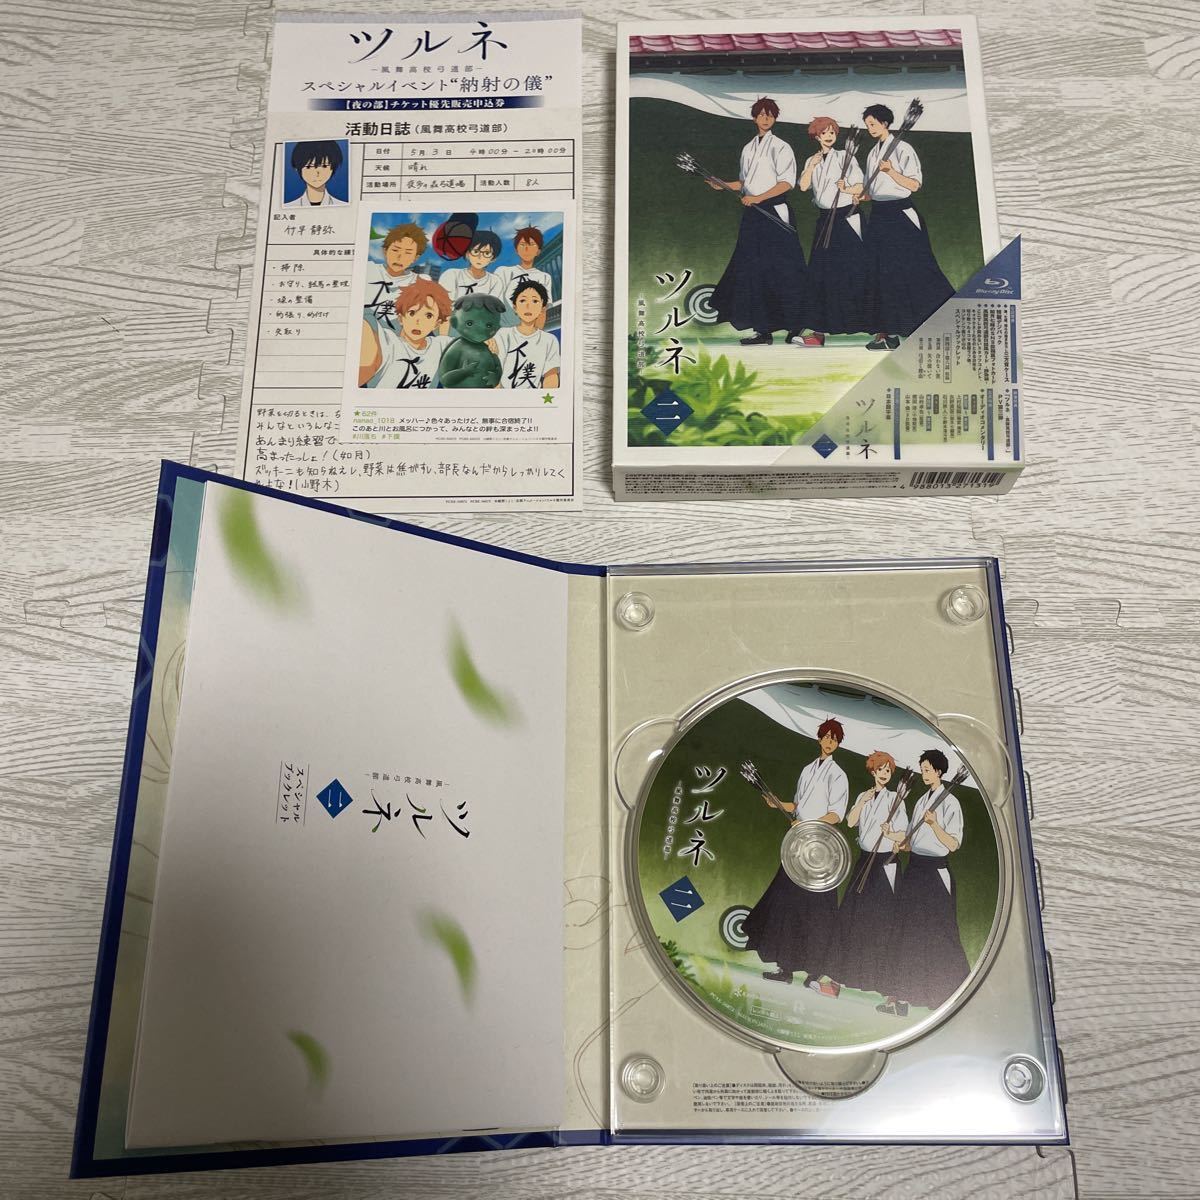 TVアニメ ツルネ-風舞高校弓道部- 初回版 Blu-ray 全巻セット 全5巻